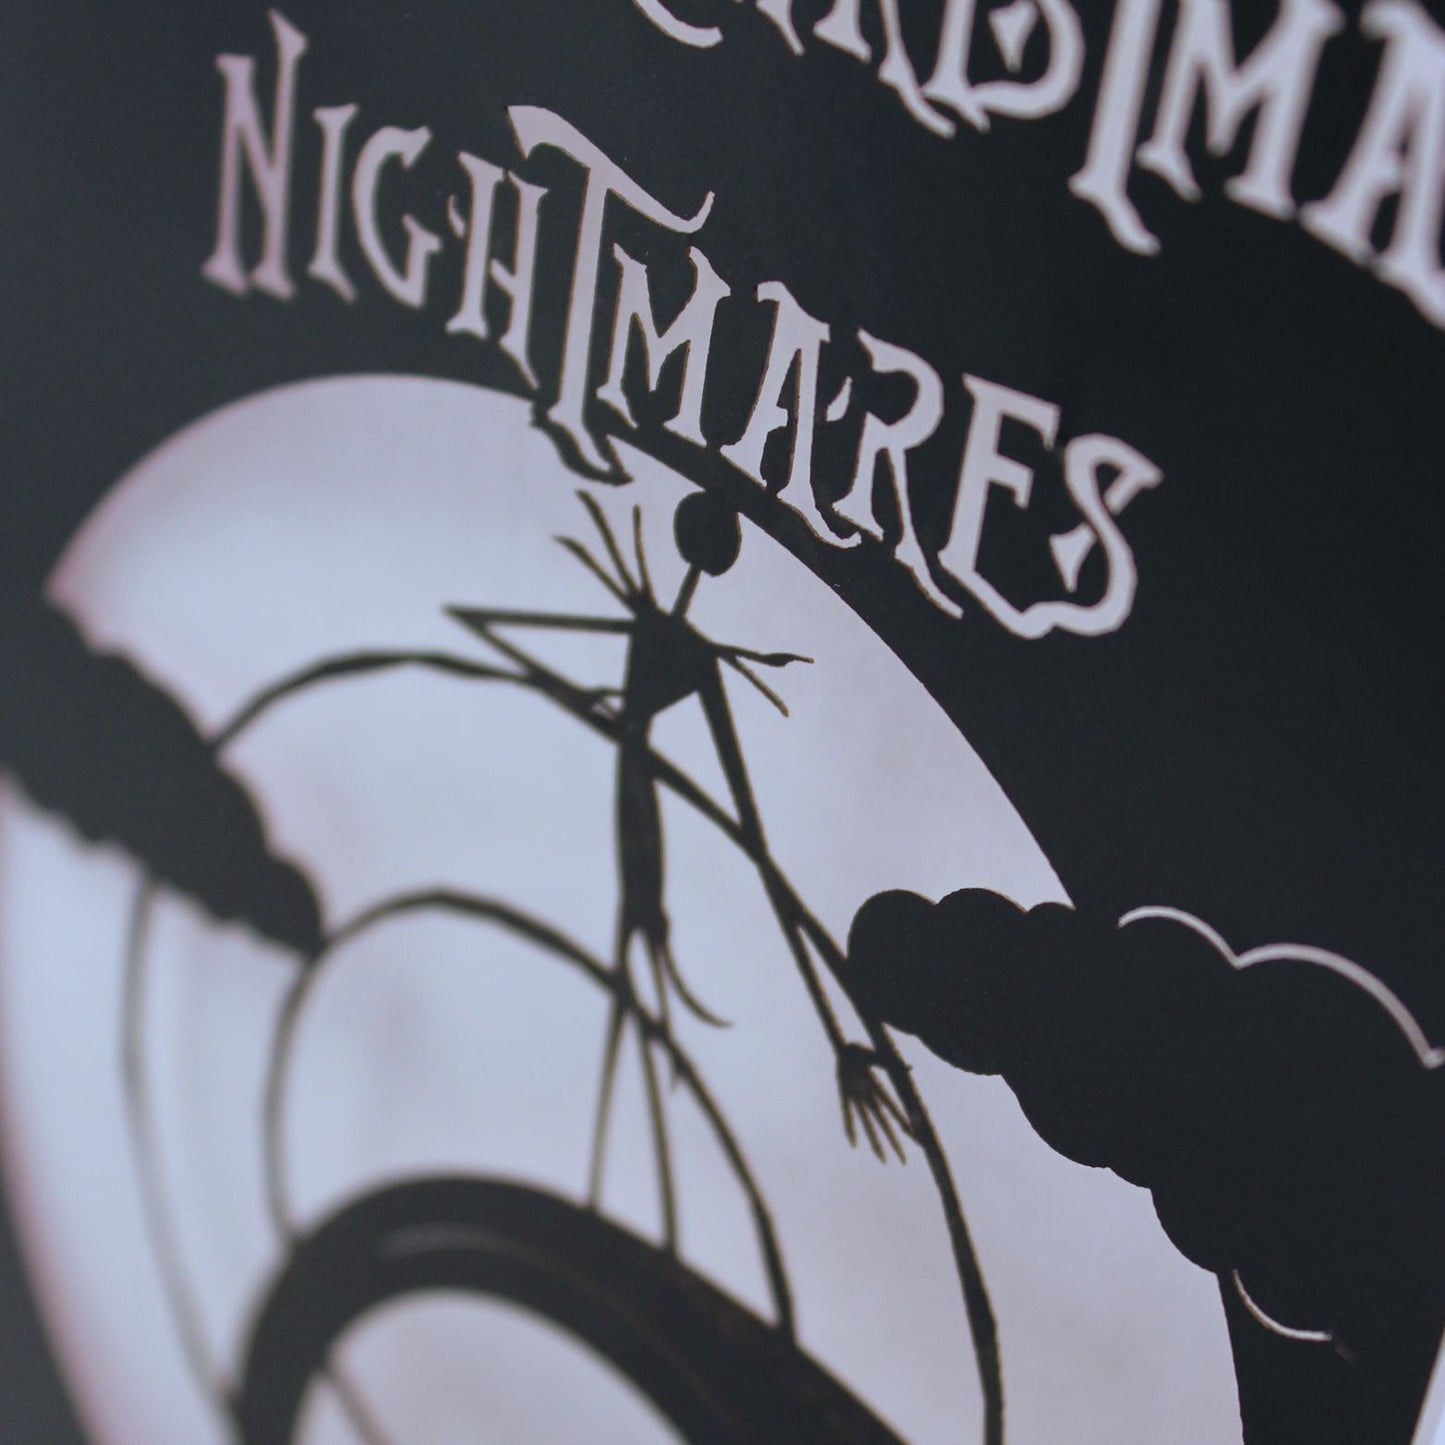 Nightmare Before Christmas Card - "Happy Christmas Nightmares". Jack Skellington